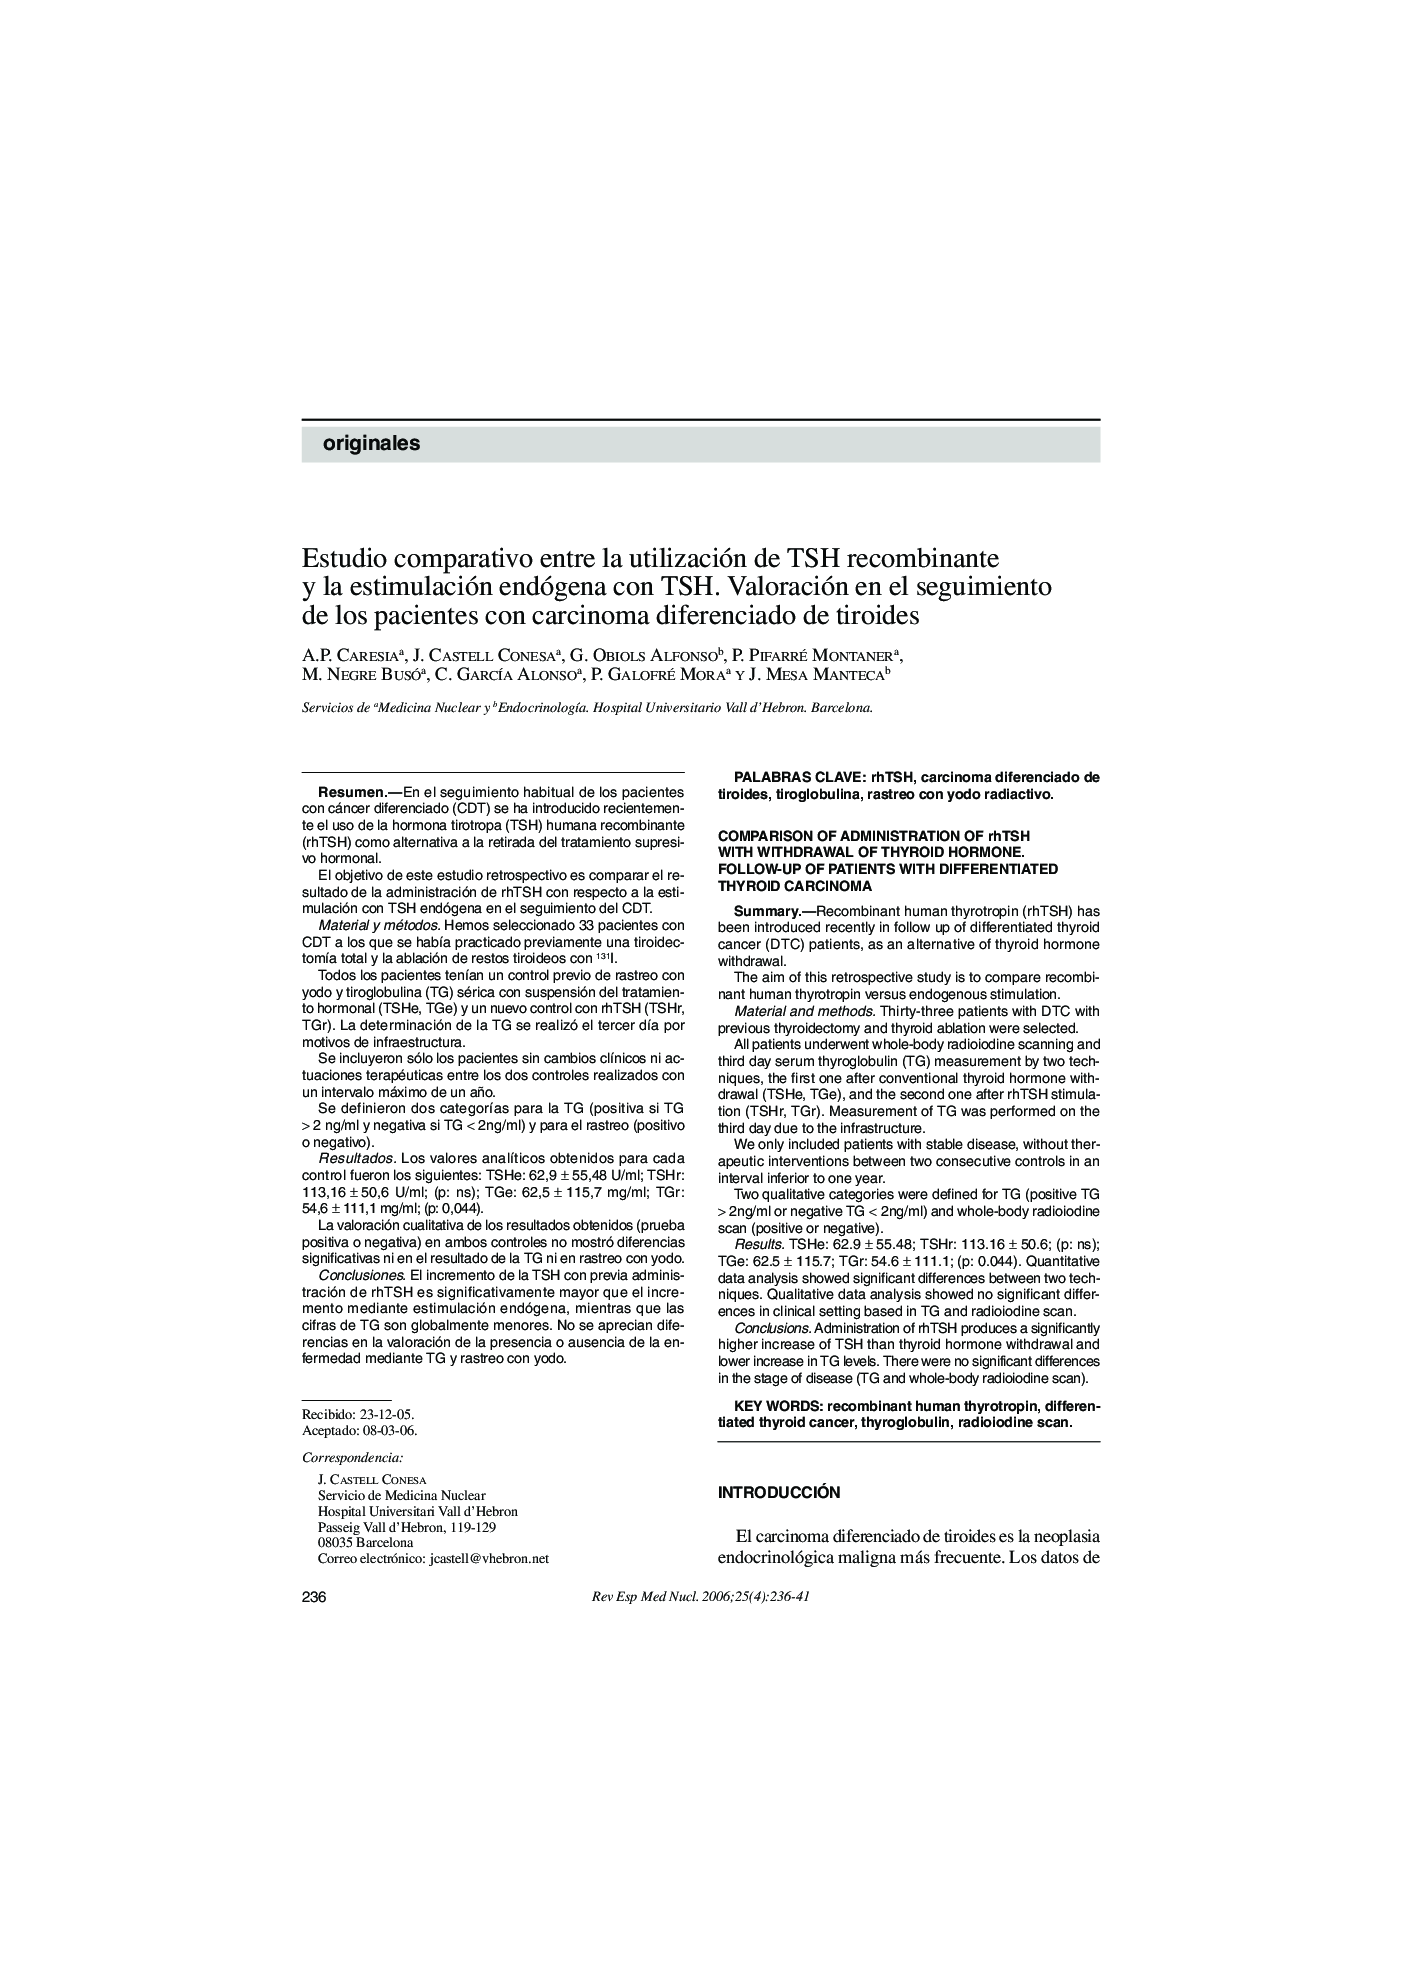 Estudio comparativo entre la utilización de TSH recombinante y la estimulación endógena con TSH. Valoración en el seguimiento de los pacientes con carcinoma diferenciado de tiroides